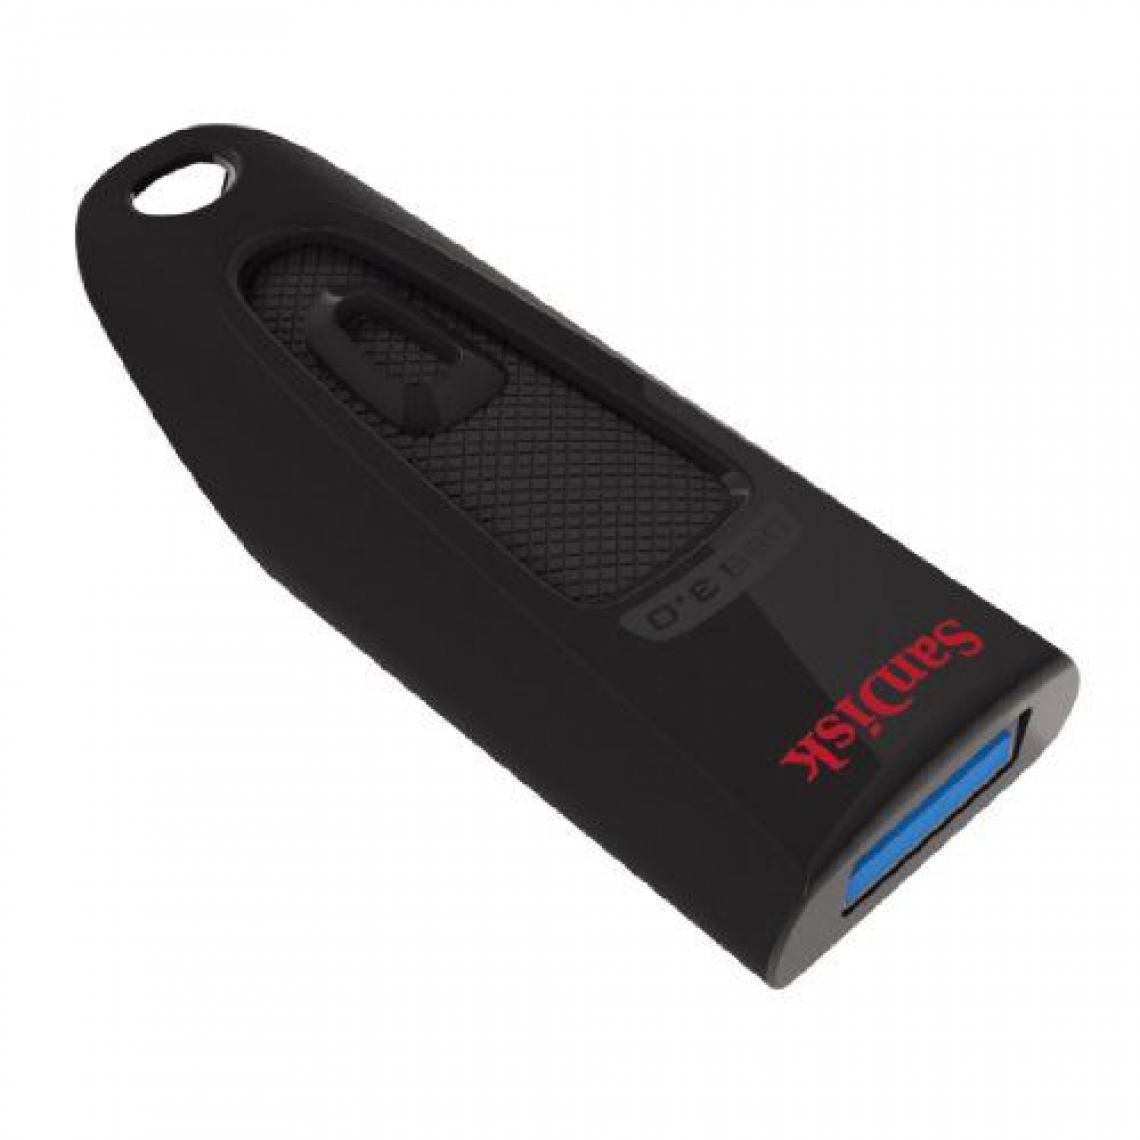 Mgm - Clé USB 3.0 SanDisk Ultra 32 Go avec une vitesse de lecture allant jusqu'à 100 Mo/s (SDCZ48-032G-U46) - Clés USB